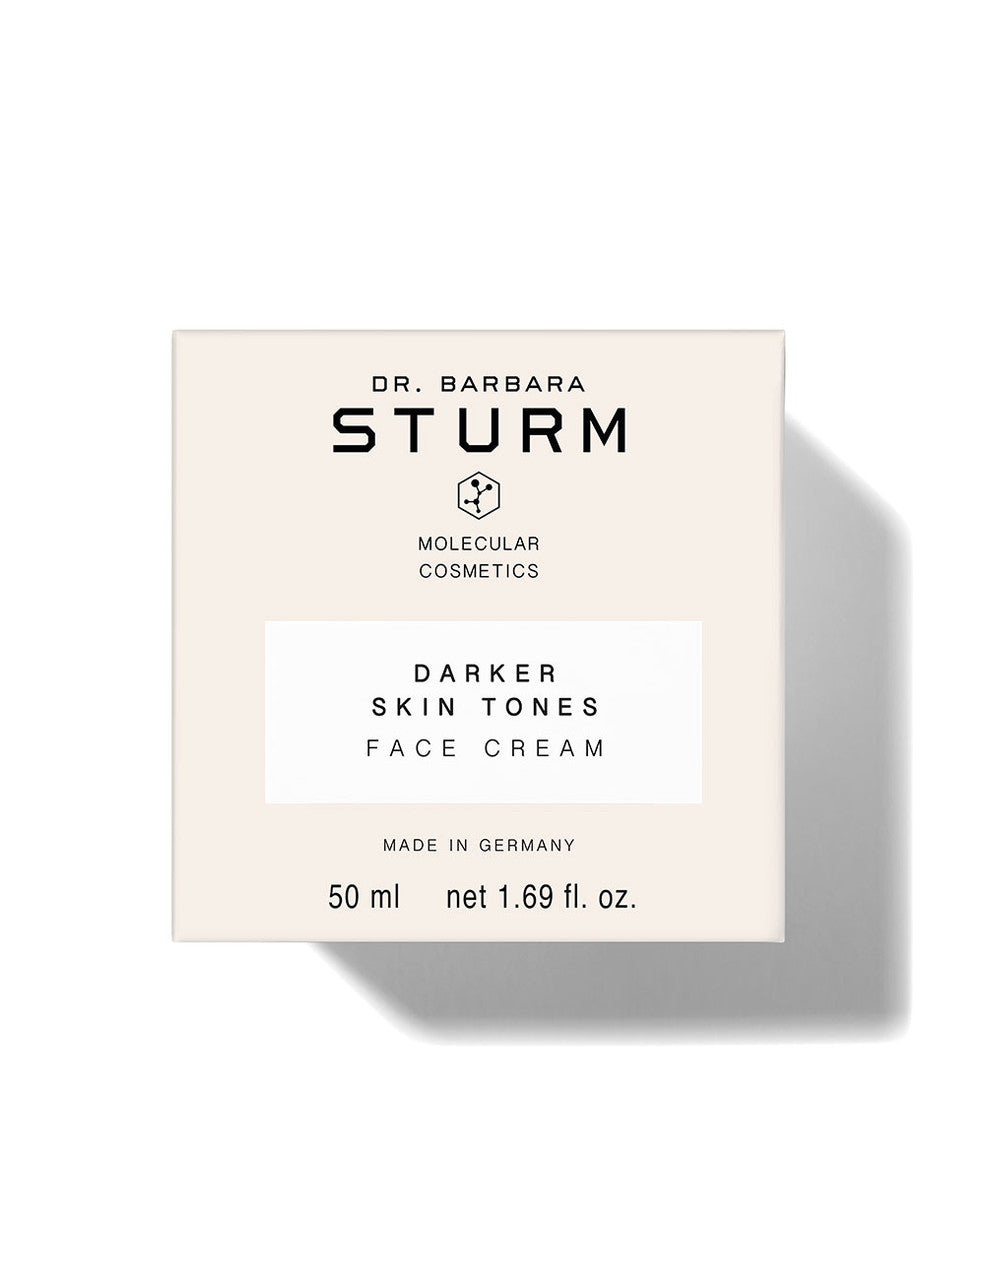 Darker Skin Tones Face Cream 50ml